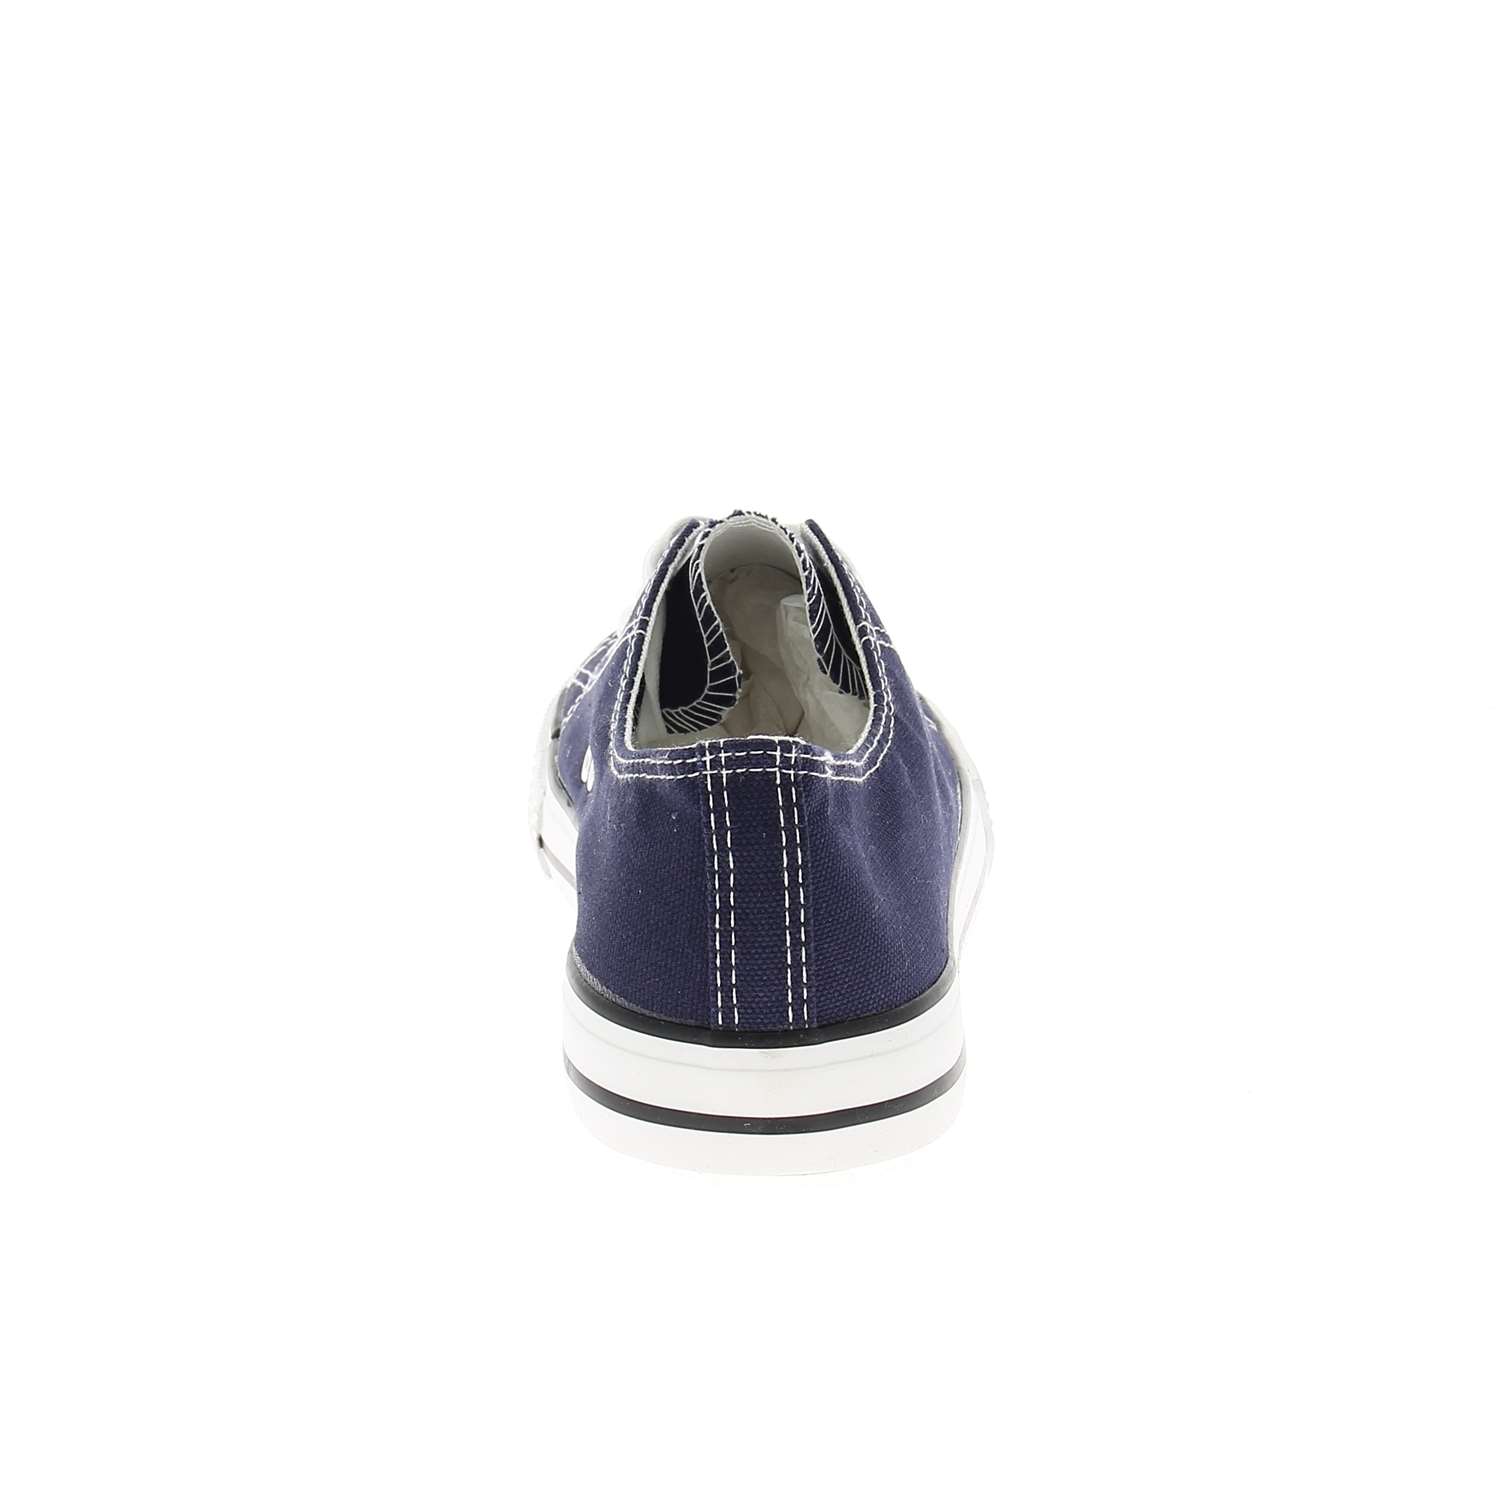 04 - GANTO - GANTE - Chaussures à lacets - Textile